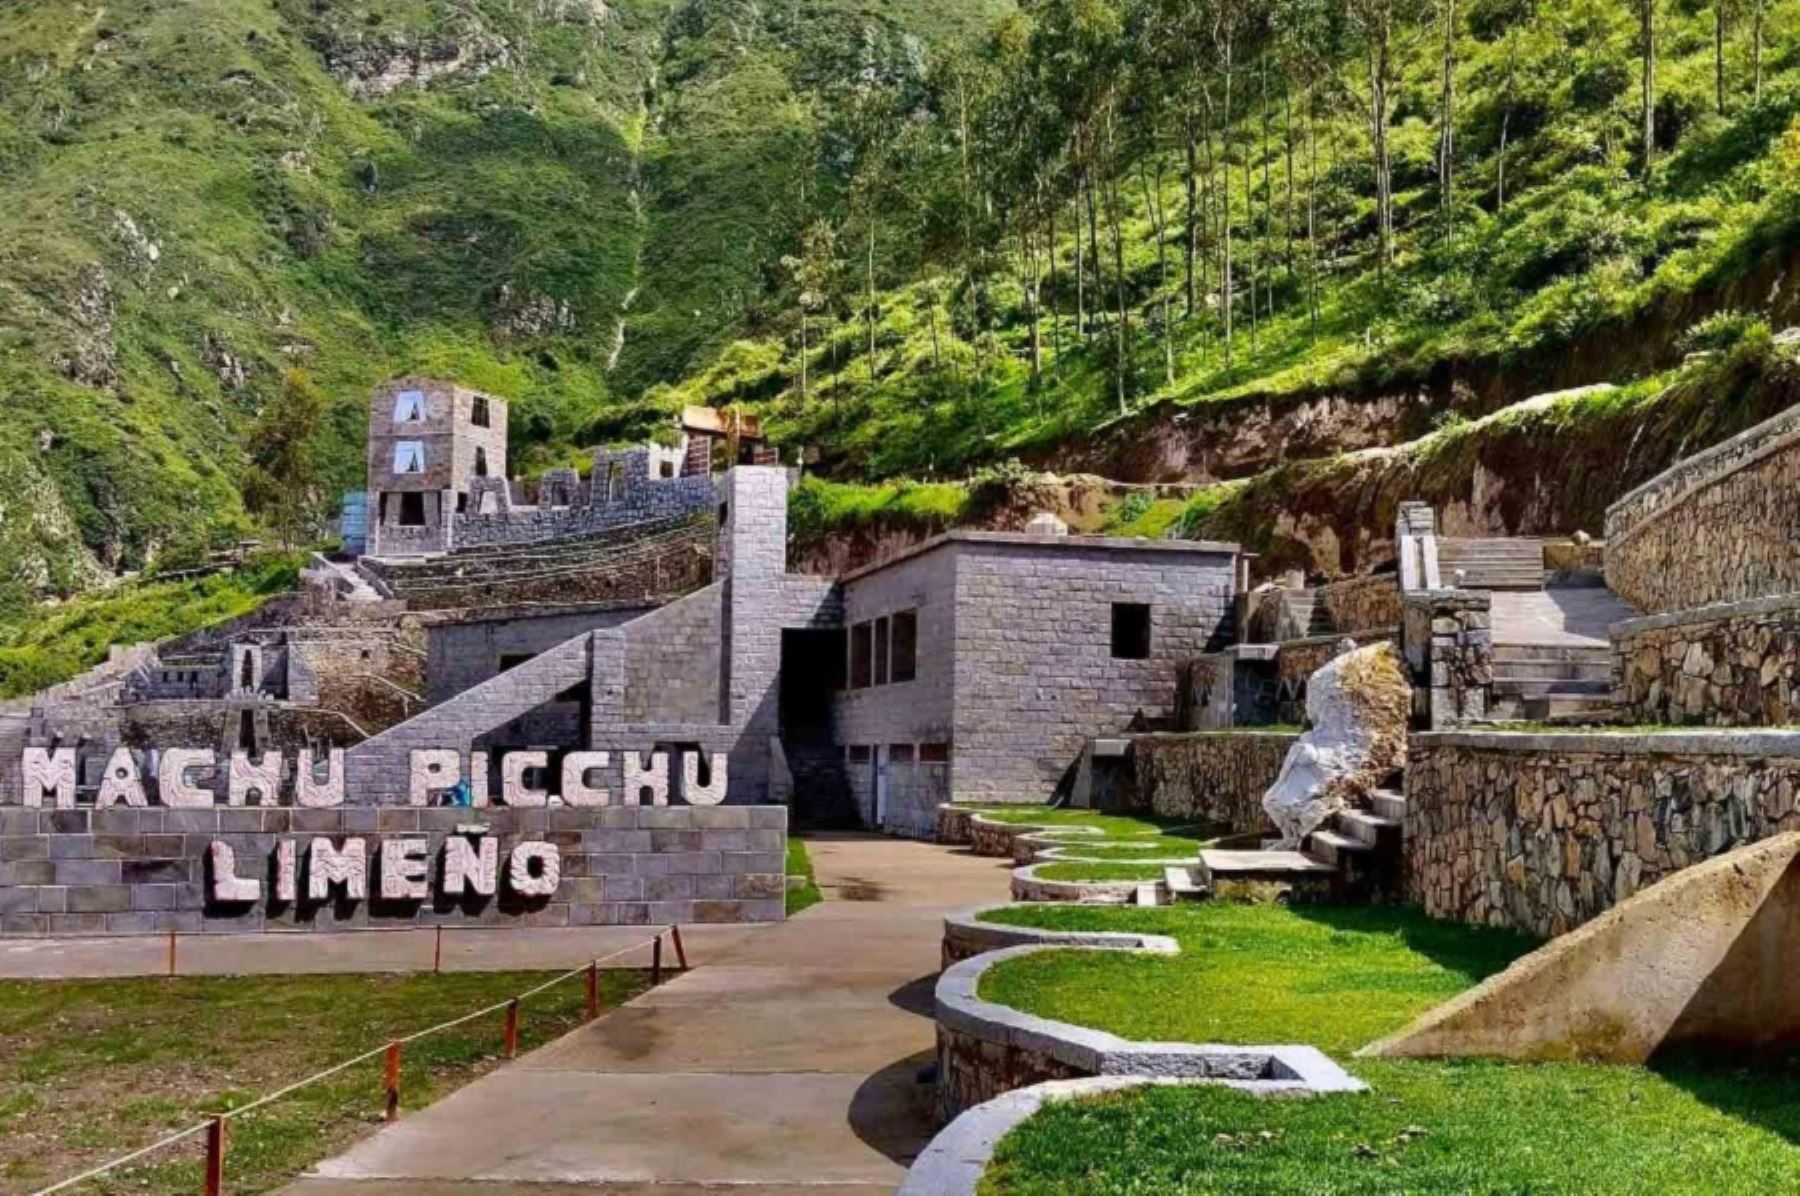 En Canta está el Machu Picchu limeño, parque temático inspirado en la arquitectura del antiguo Perú. Foto: ANDINA/Difusión